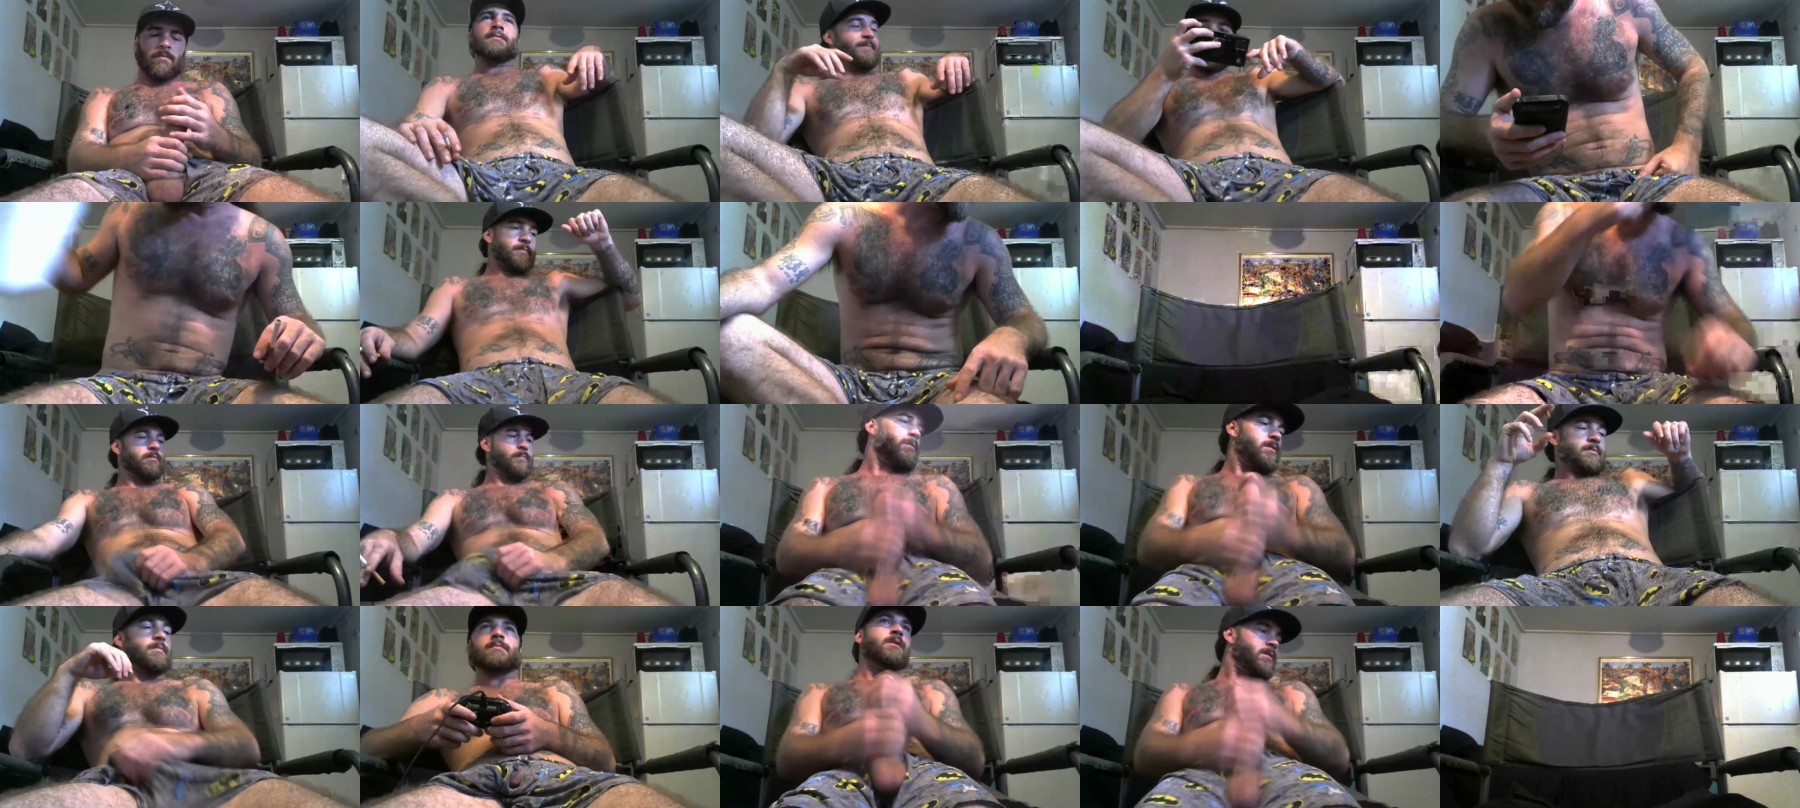 Txbigd254  19-09-2021 Male Webcam